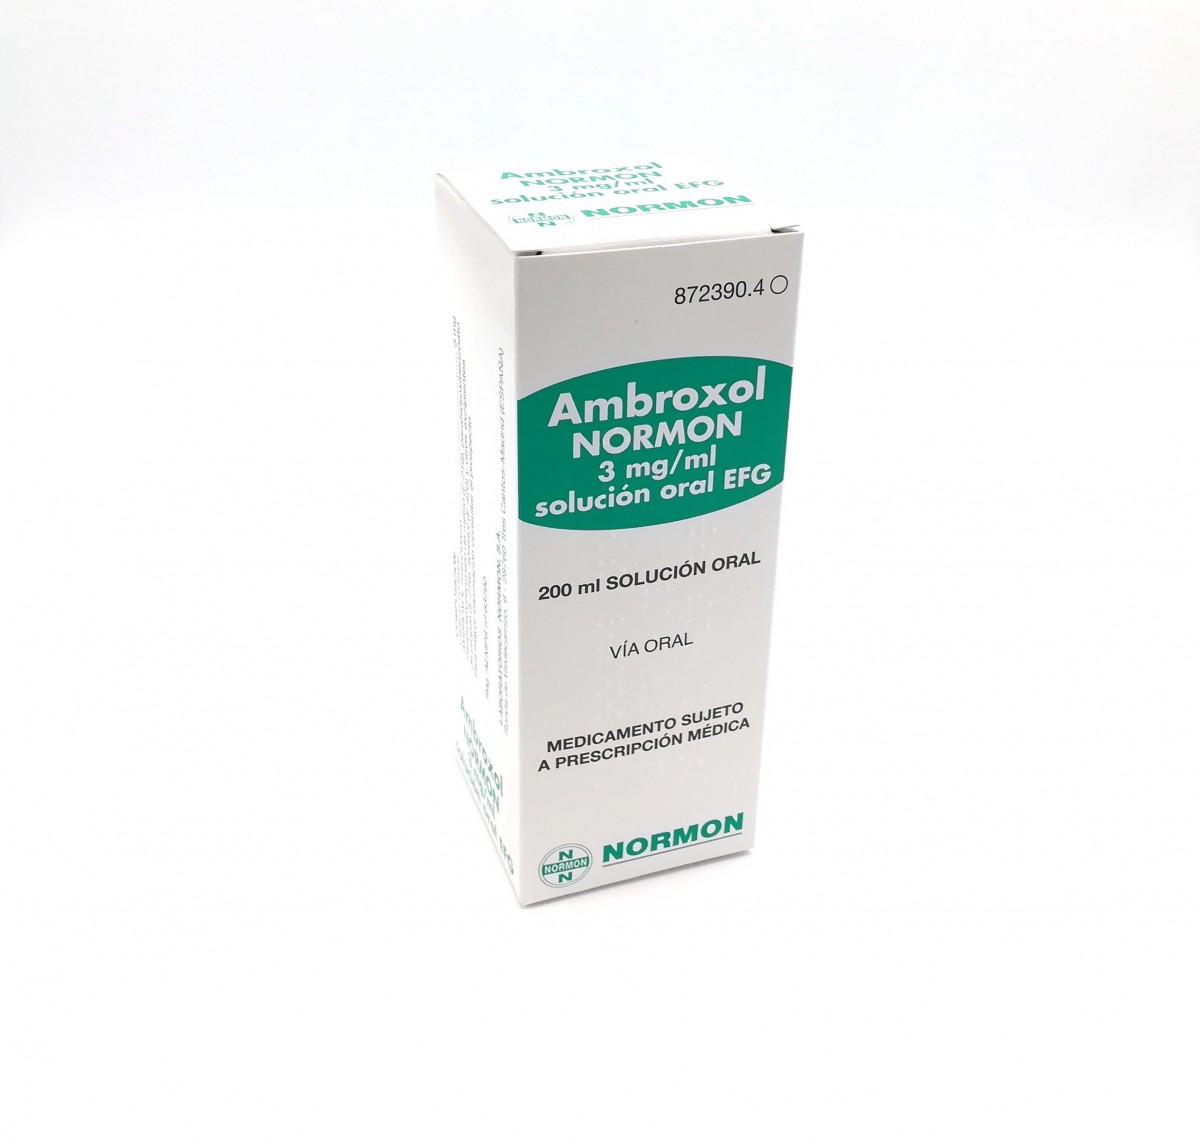 AMBROXOL NORMON 3 mg/ml SOLUCION ORAL EFG, 1 frasco de 200 ml fotografía del envase.